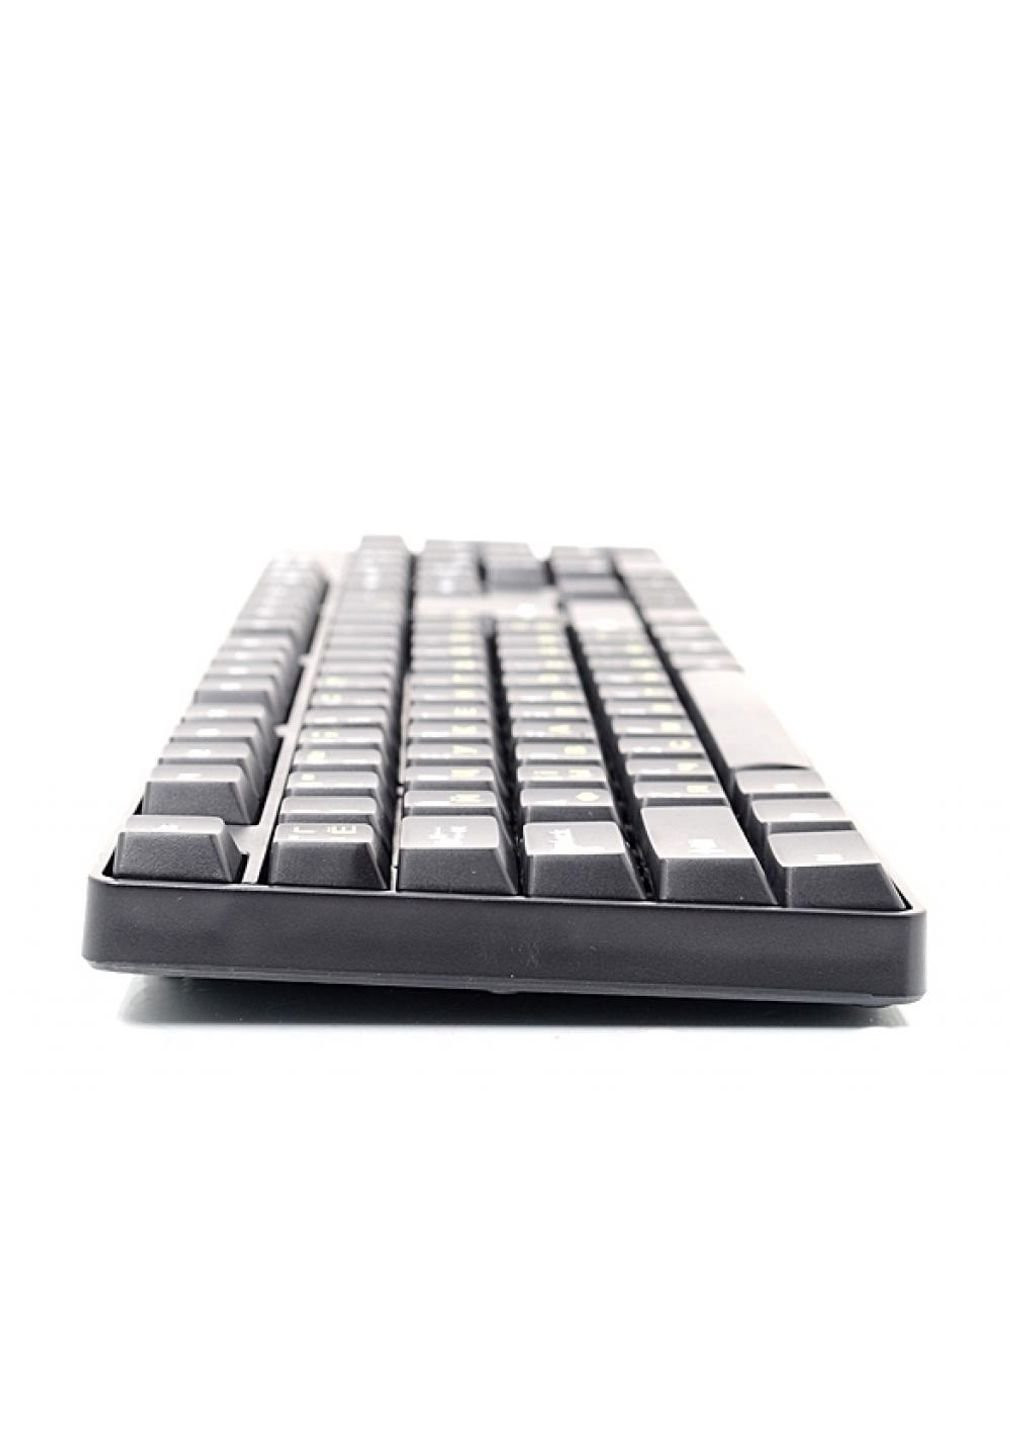 Клавиатура KB-103-UA/PS2 Gembird (250604501)